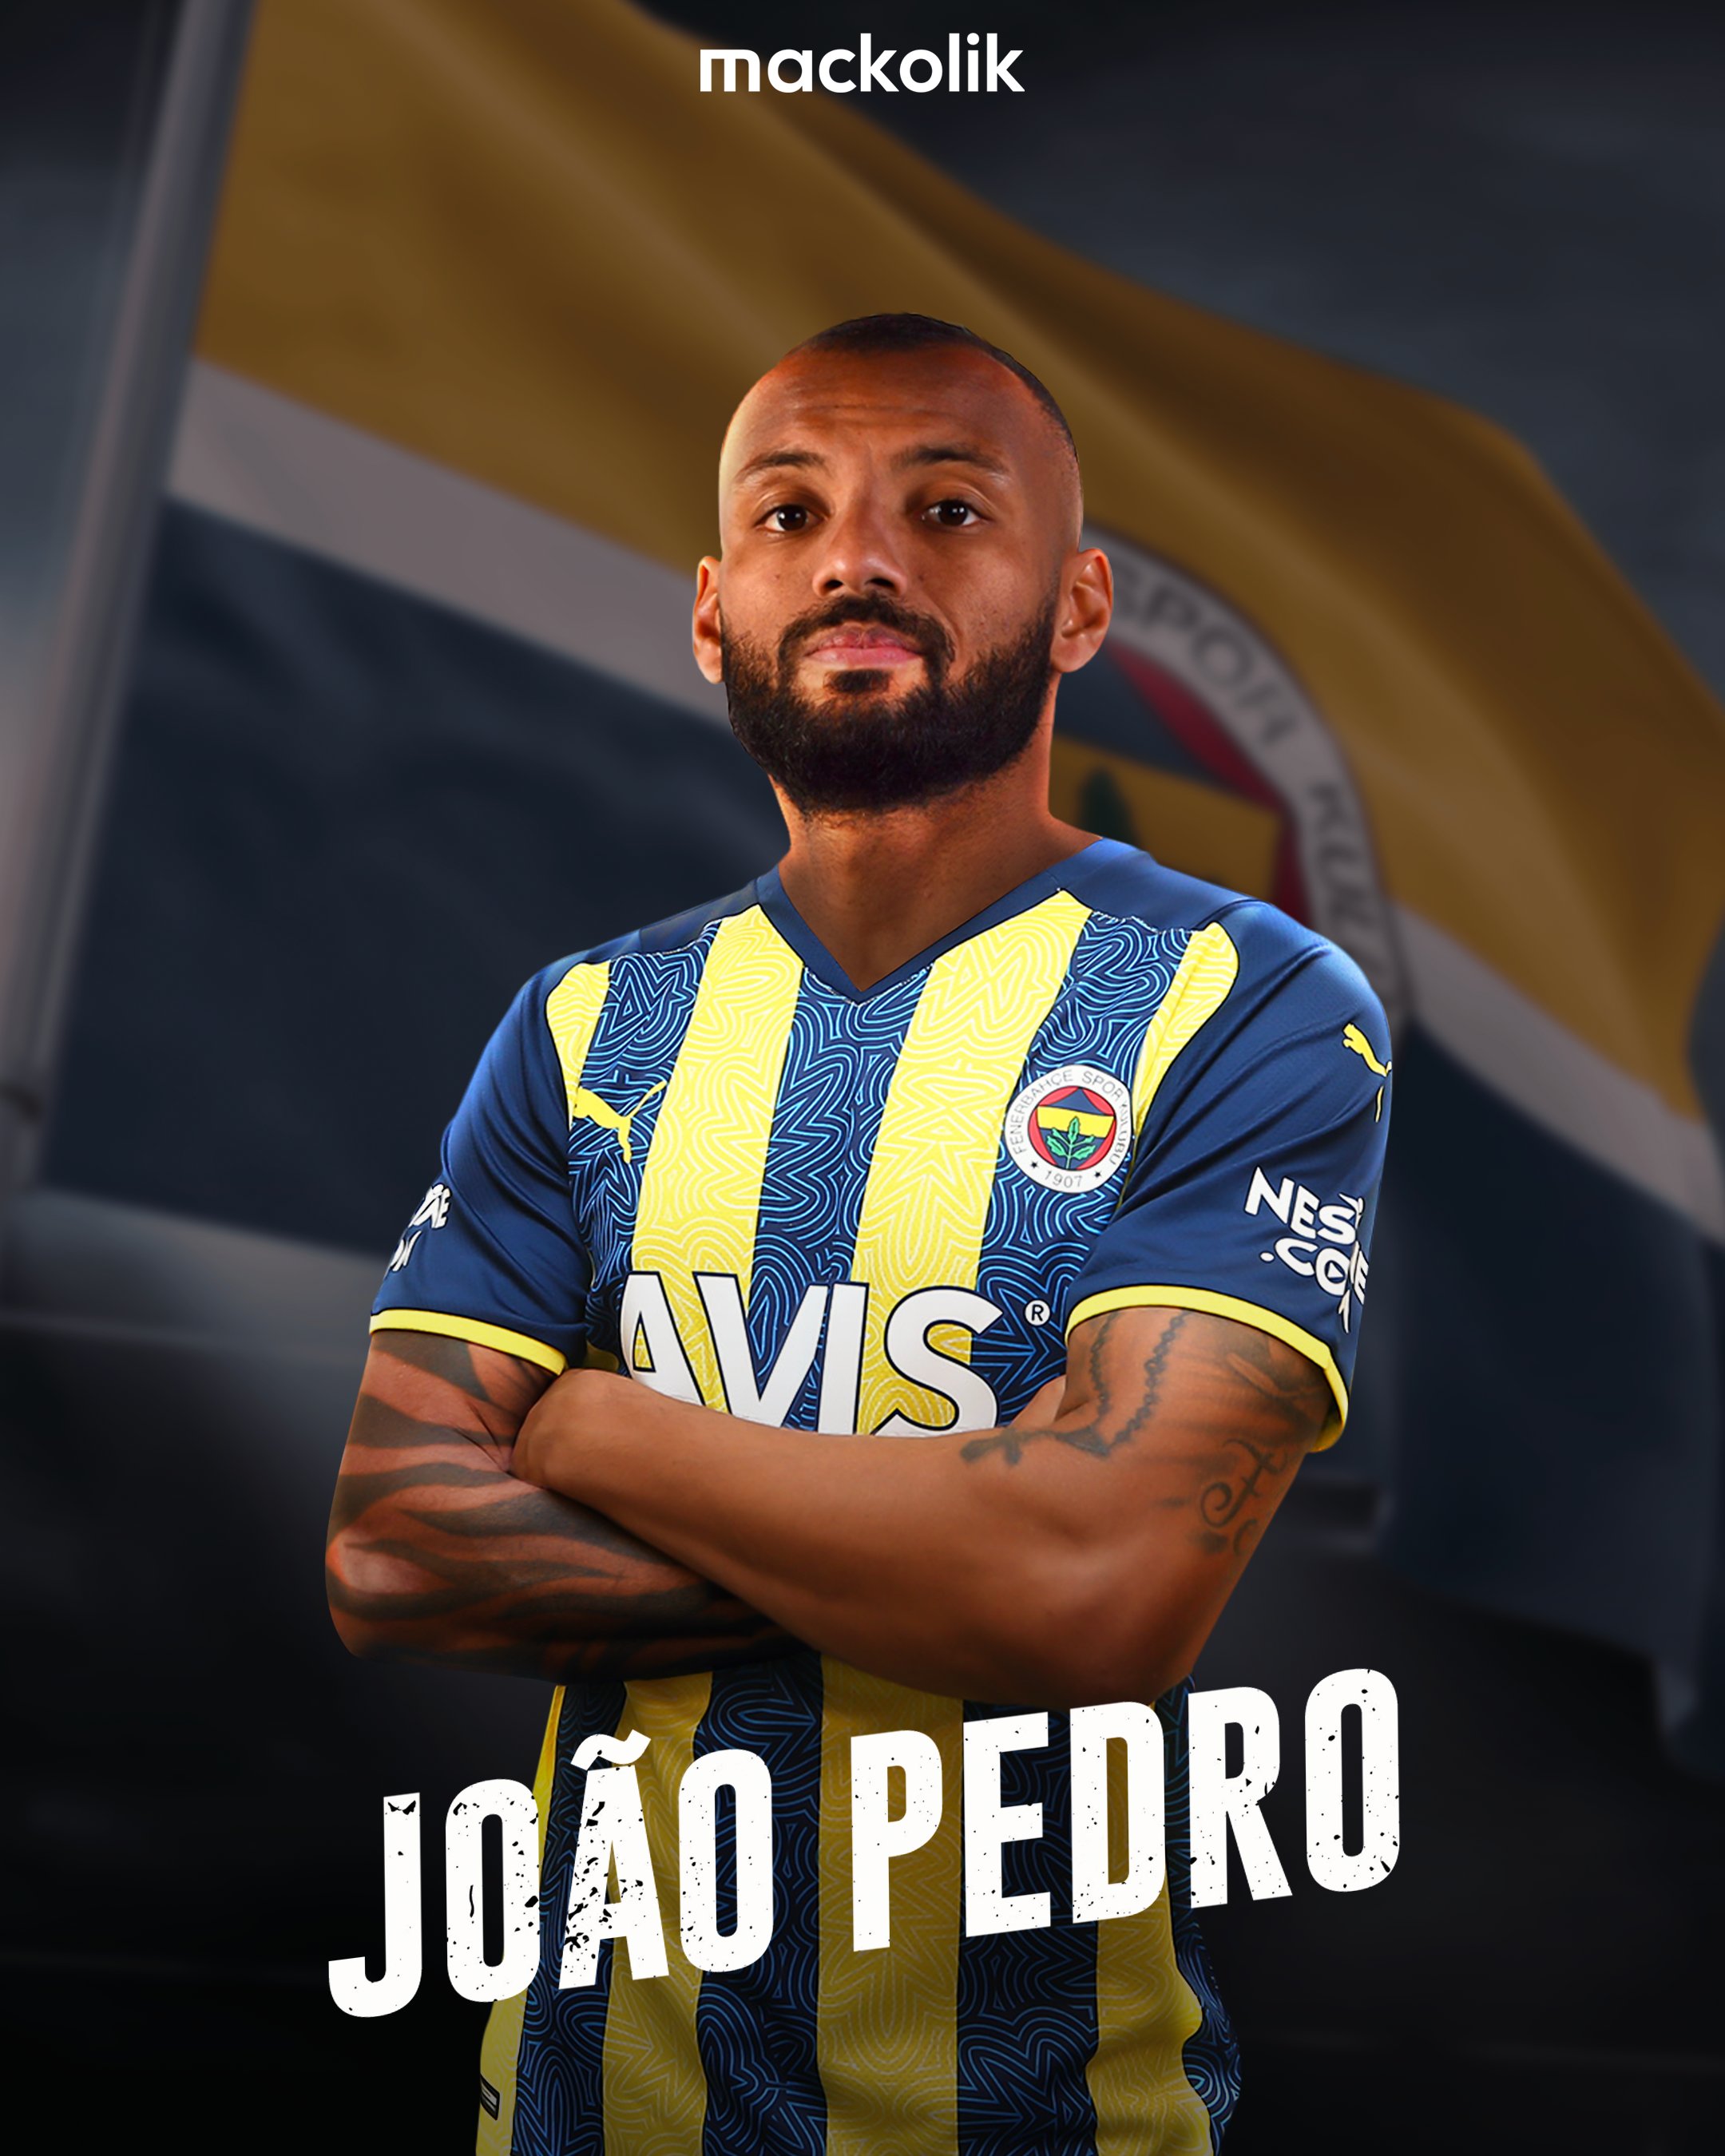 Fenerbahçe sign Joao Pedro until 2025